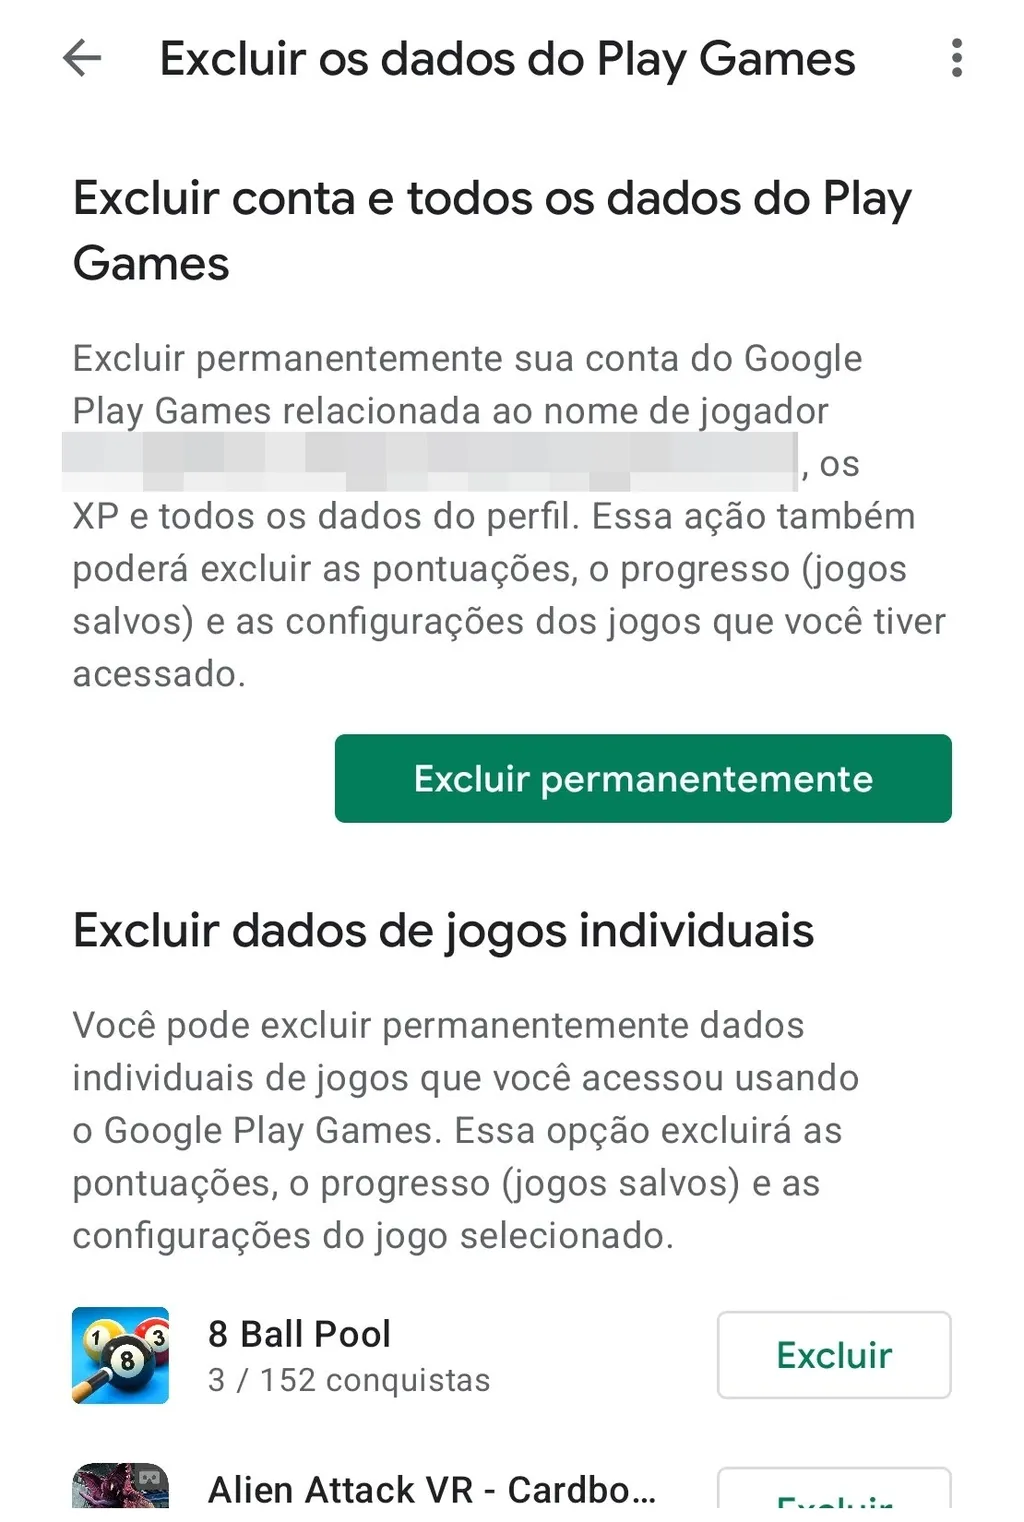 Porque é que não consigo ver os jogos da categoria de acesso antecipado? -  Comunidade Google Play